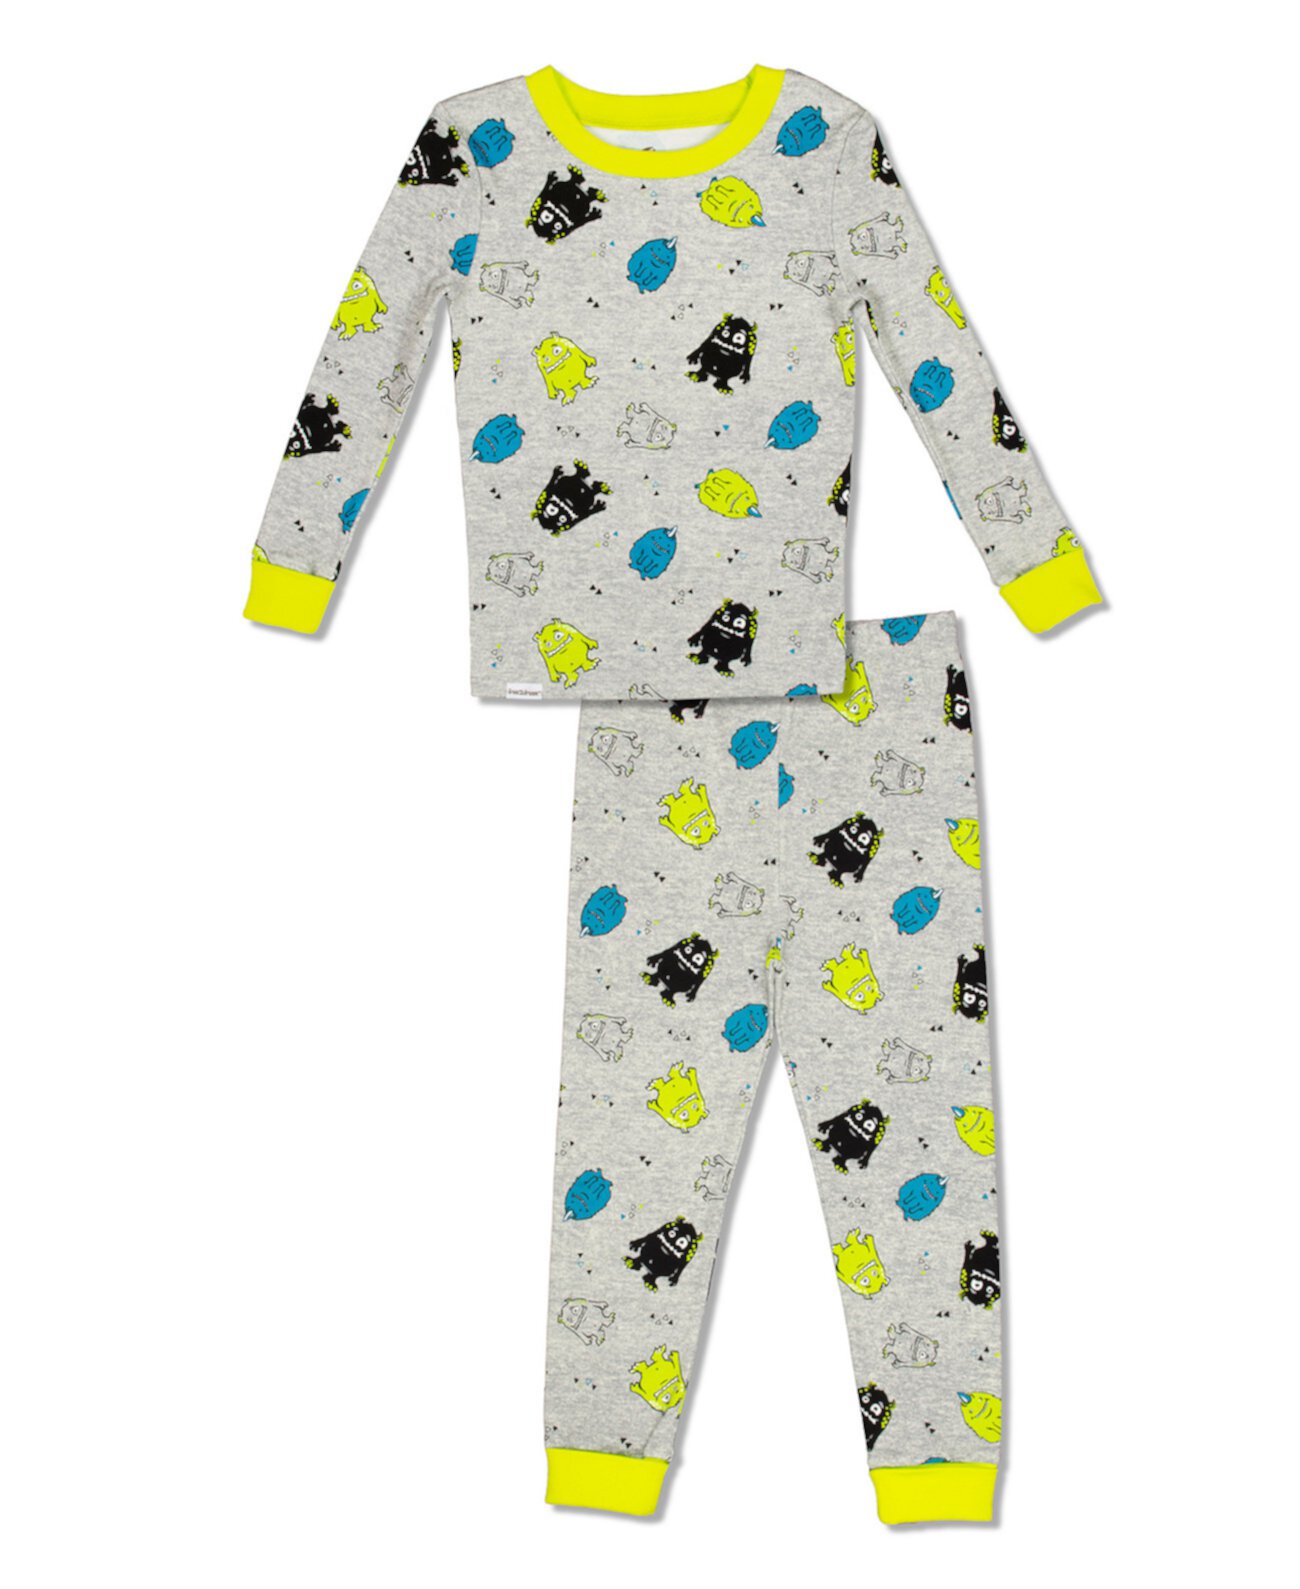 Хлопковая пижама из 2 предметов с принтом маленьких и больших монстров для мальчиков с манжетами Grow with Me Free 2 Dream